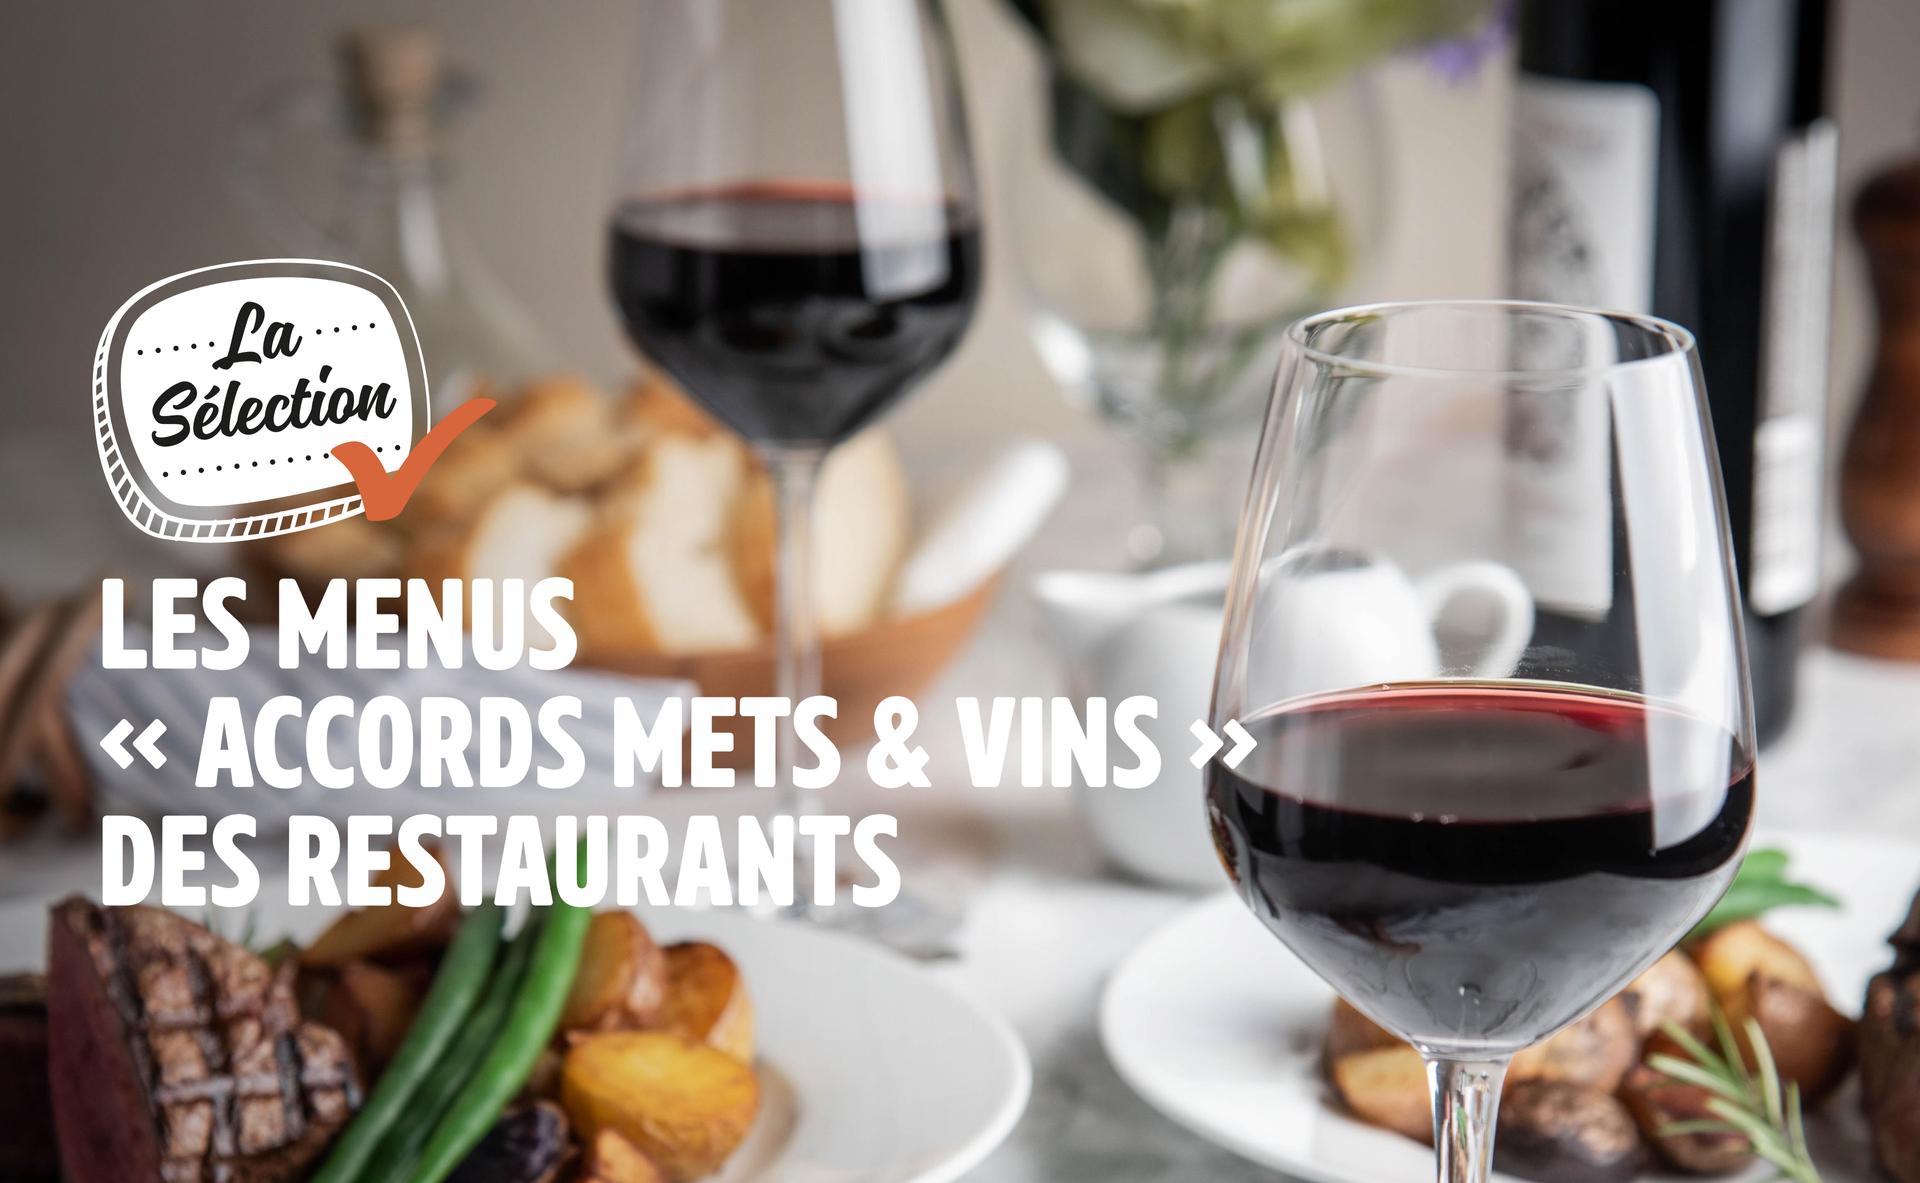 Les menus « accords mets & vins » des restaurants